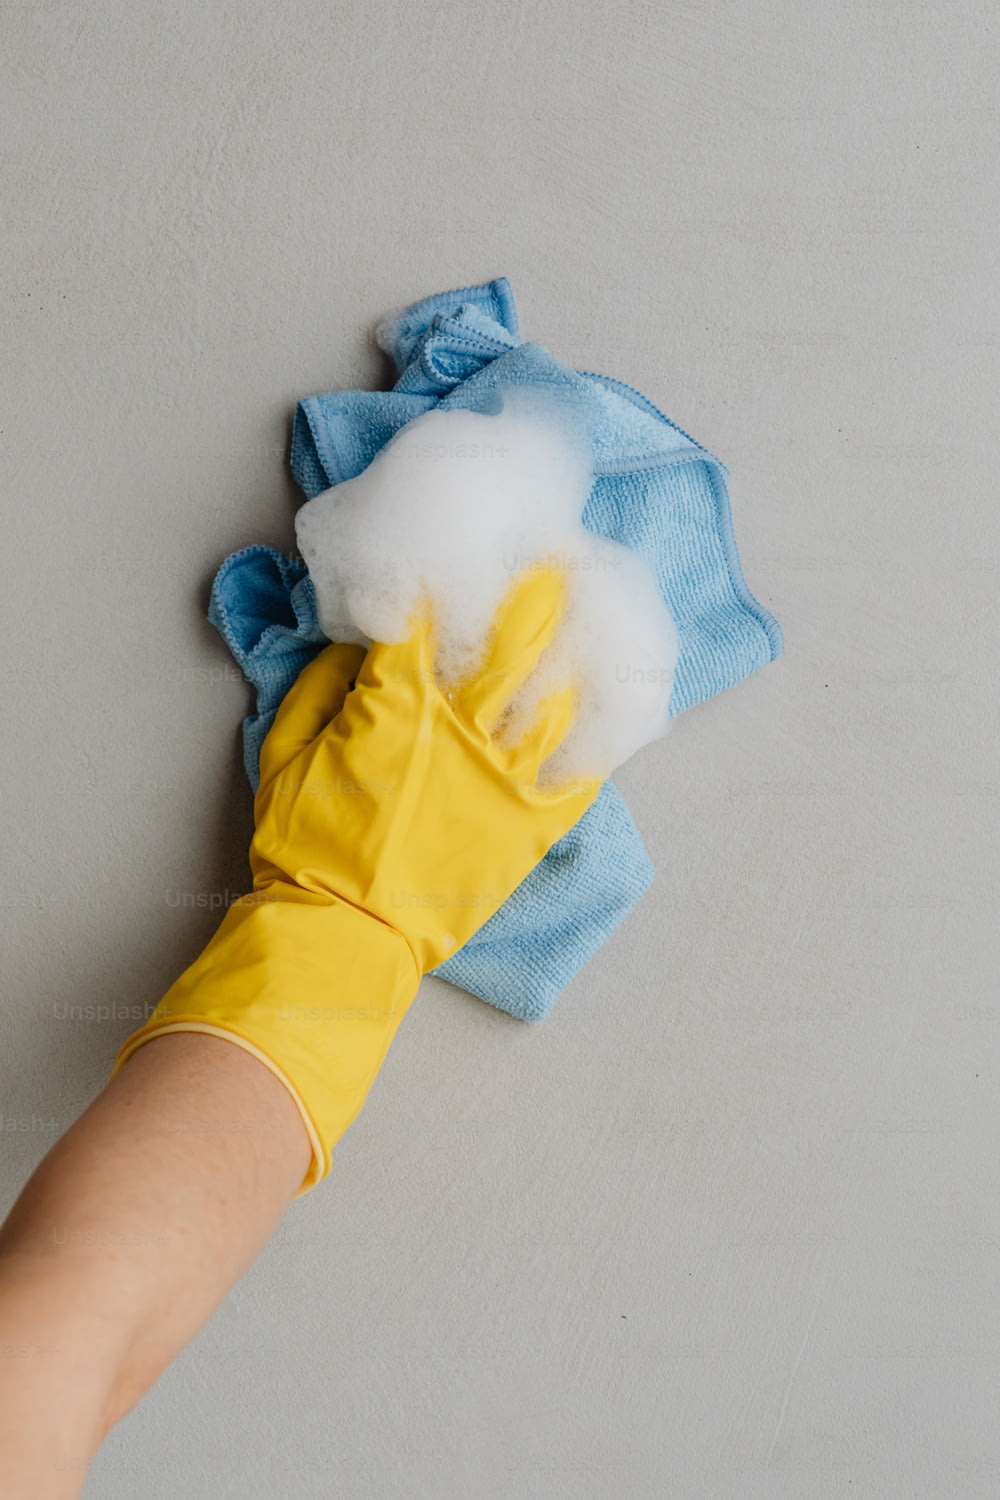 la mano di una persona che indossa guanti di gomma gialli e un panno per la pulizia